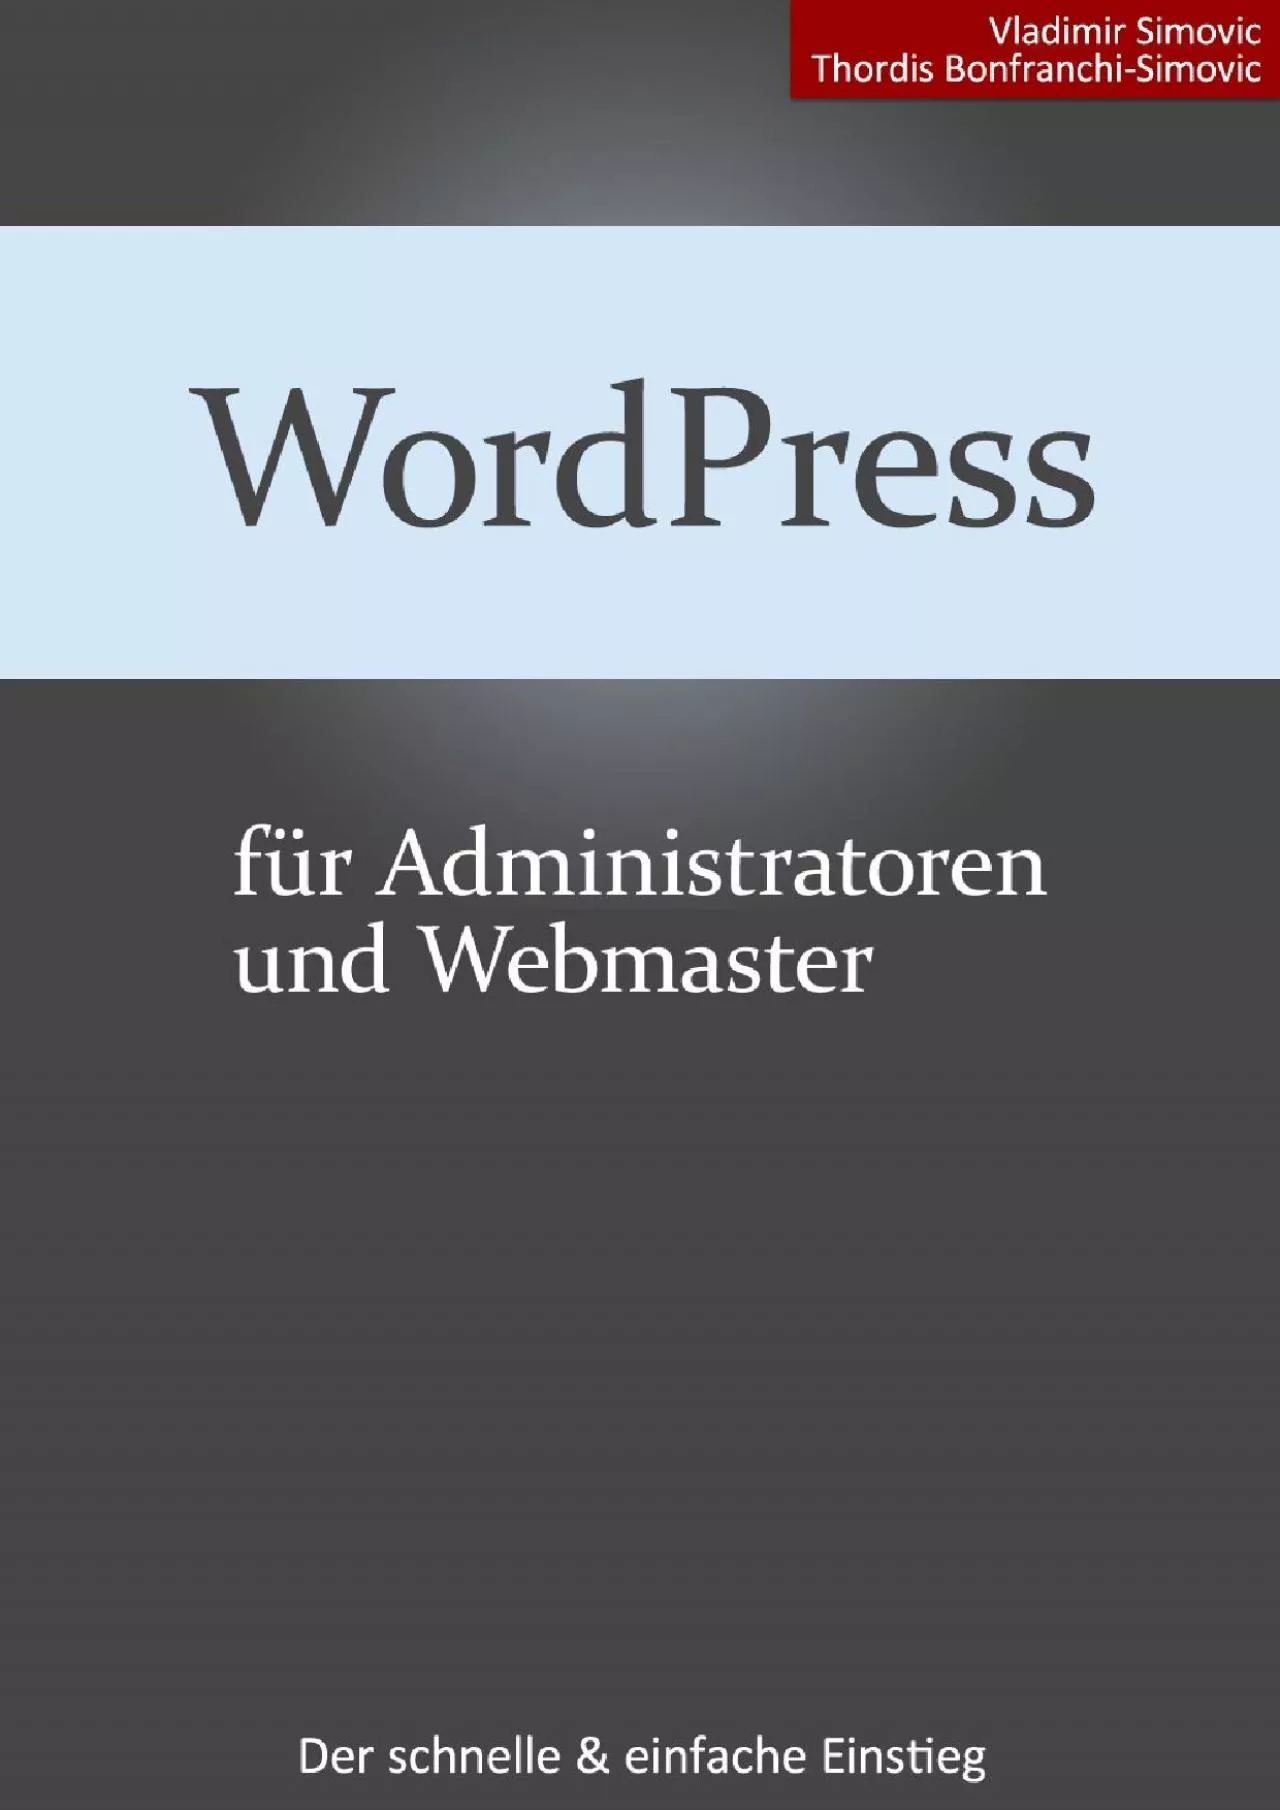 (READ)-WordPress 4.7 für Administratoren [aktualisiert] (German Edition)